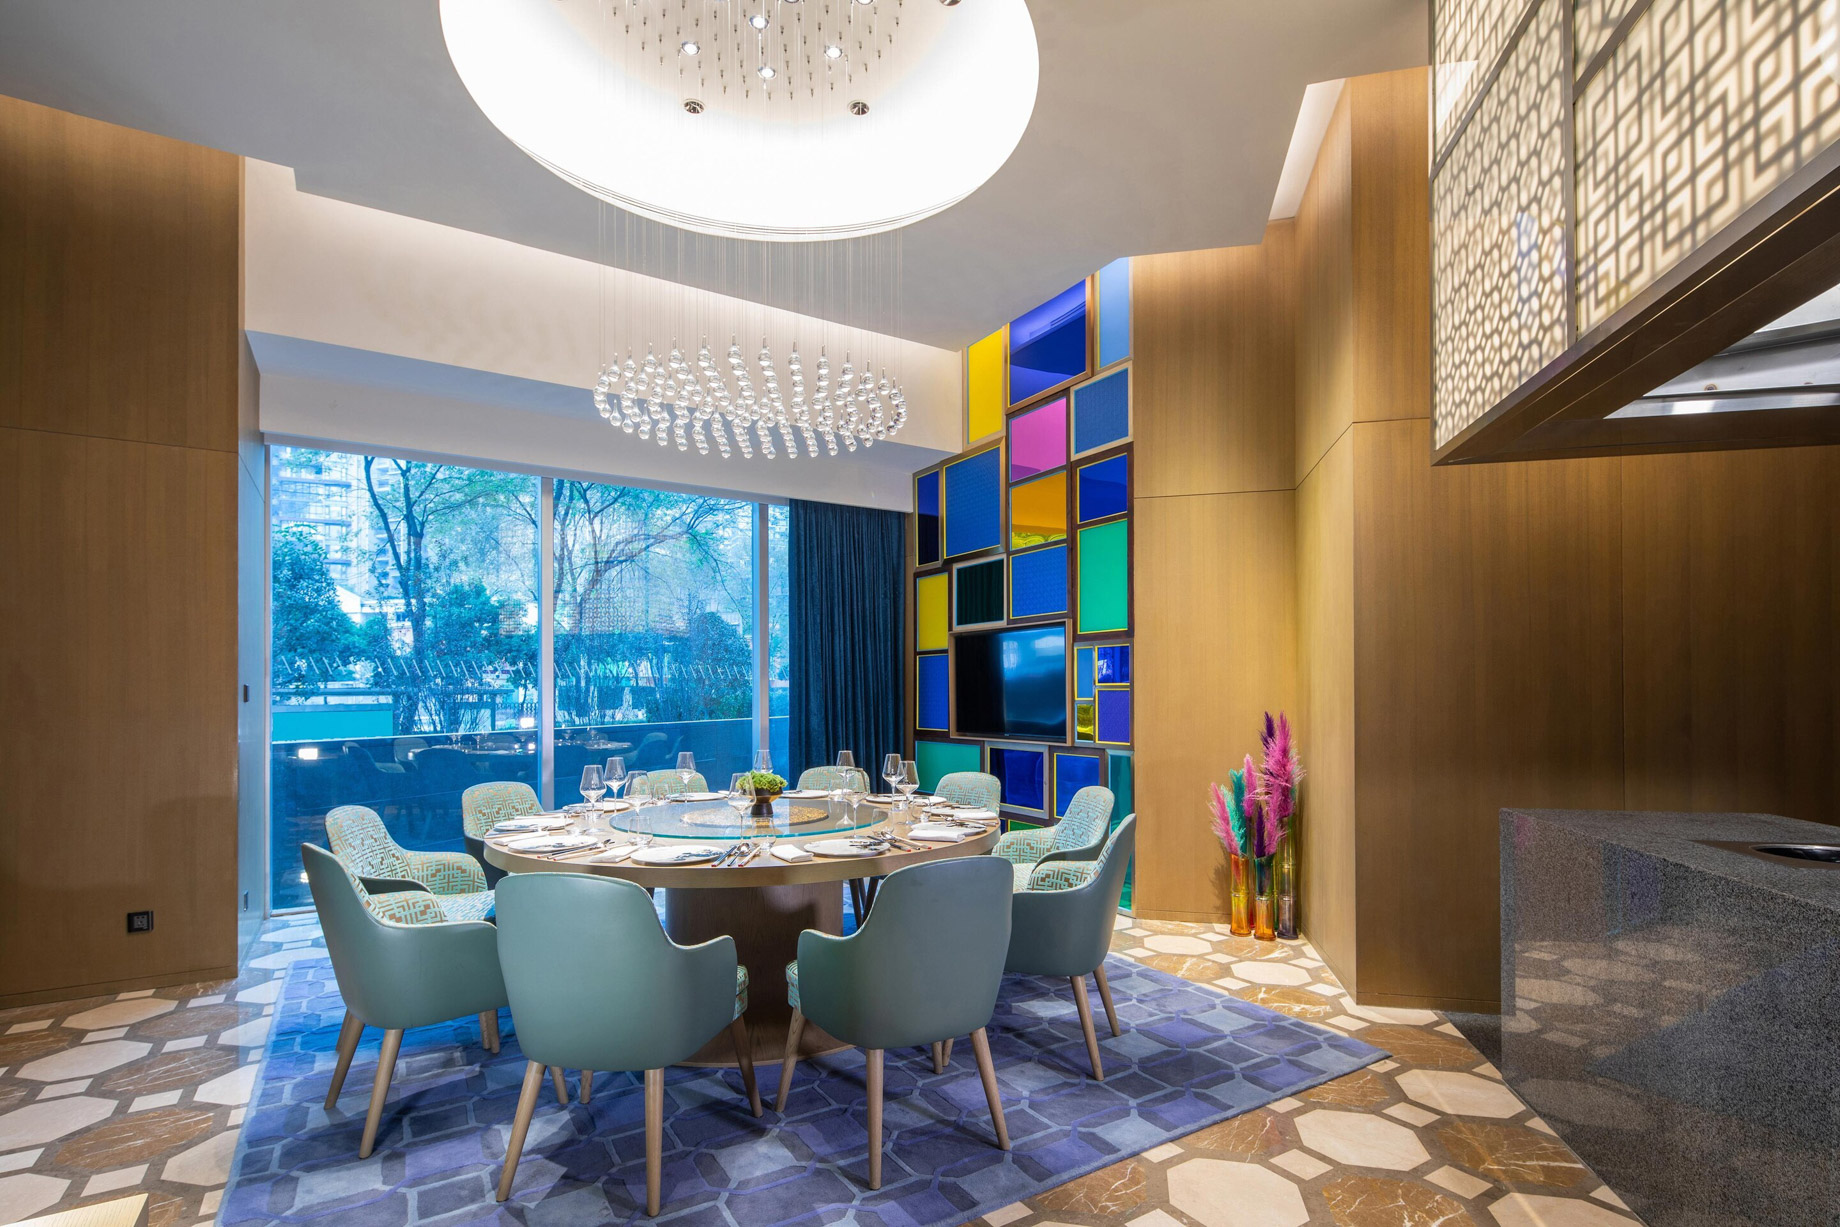 W Chengdu Hotel – Chengdu, China – YAO YEN Private Dining Room